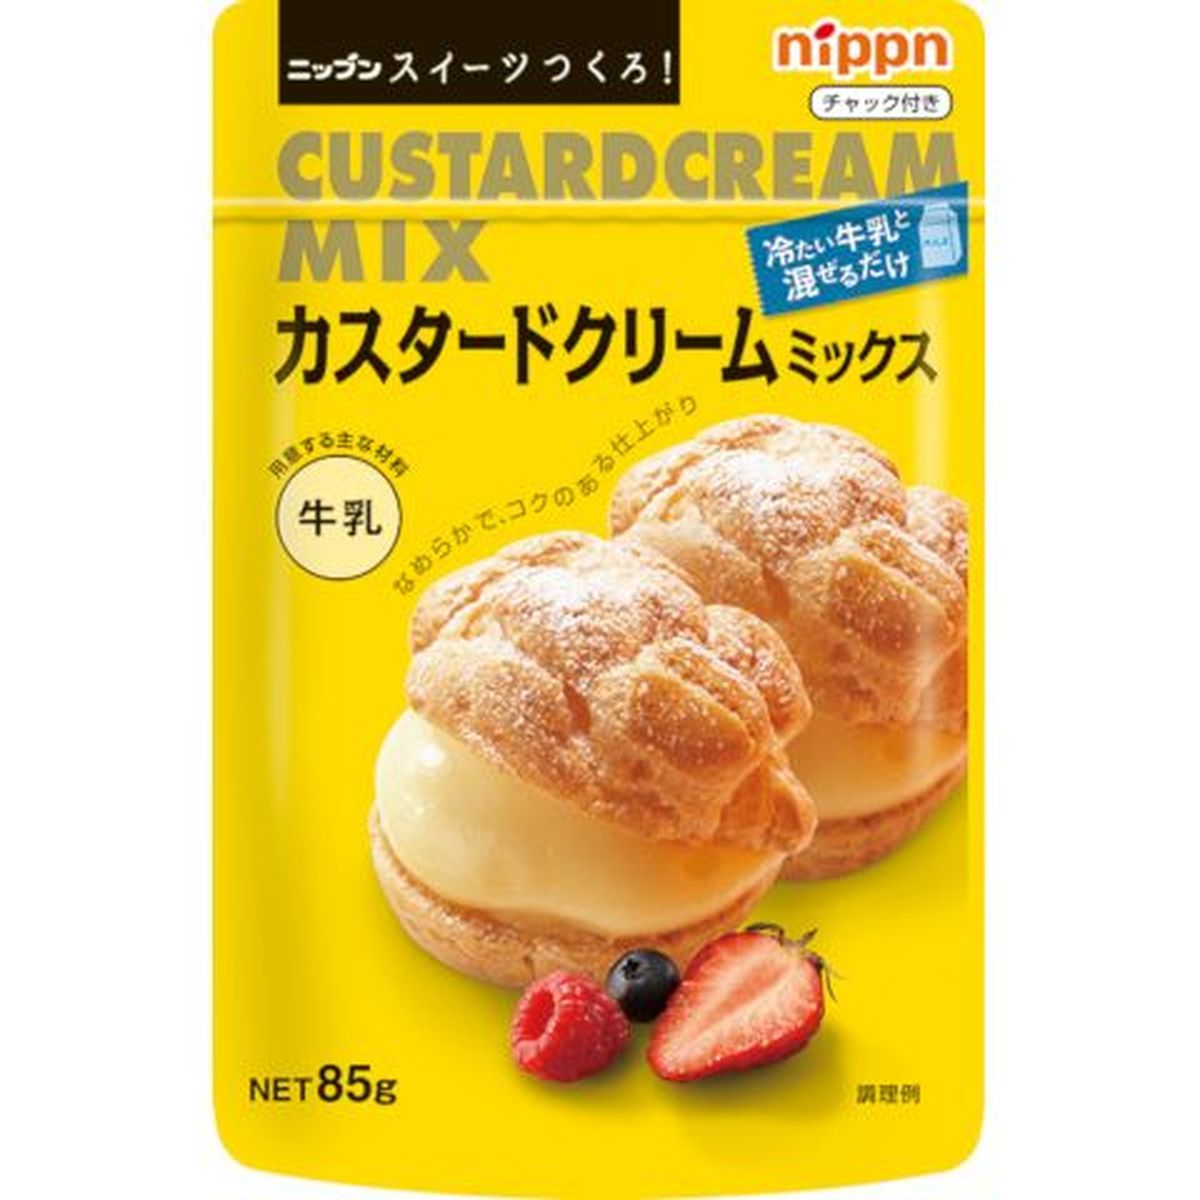 【6個入リ】日本製粉 オーマイ スイーツ作ロ カスタードクリーム 85g